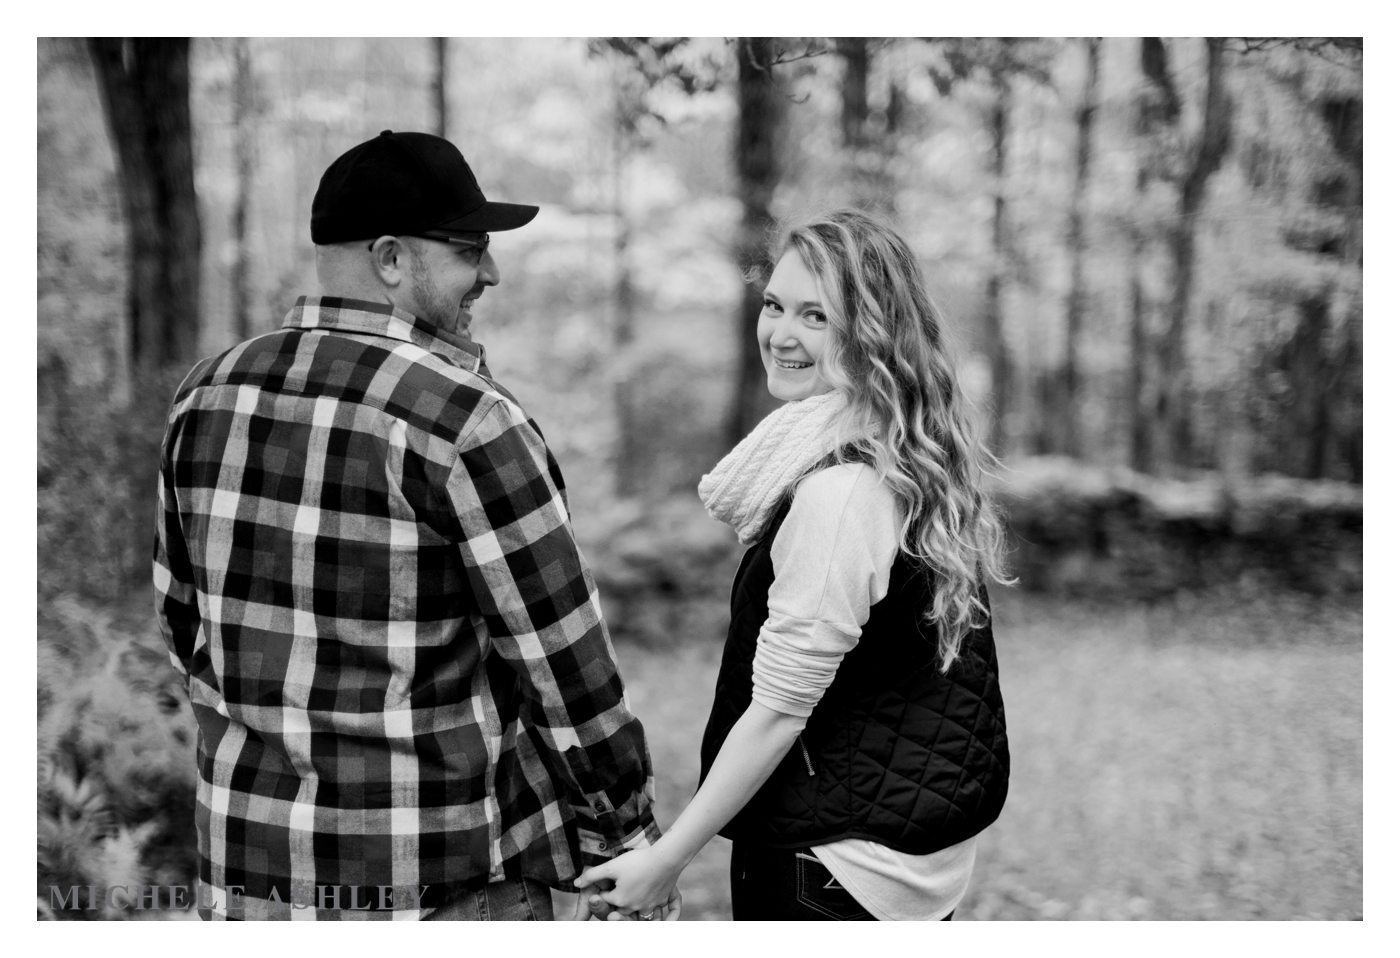 Autumn Engagement Photographer | Keira + Nick | Michele Ashley Photography